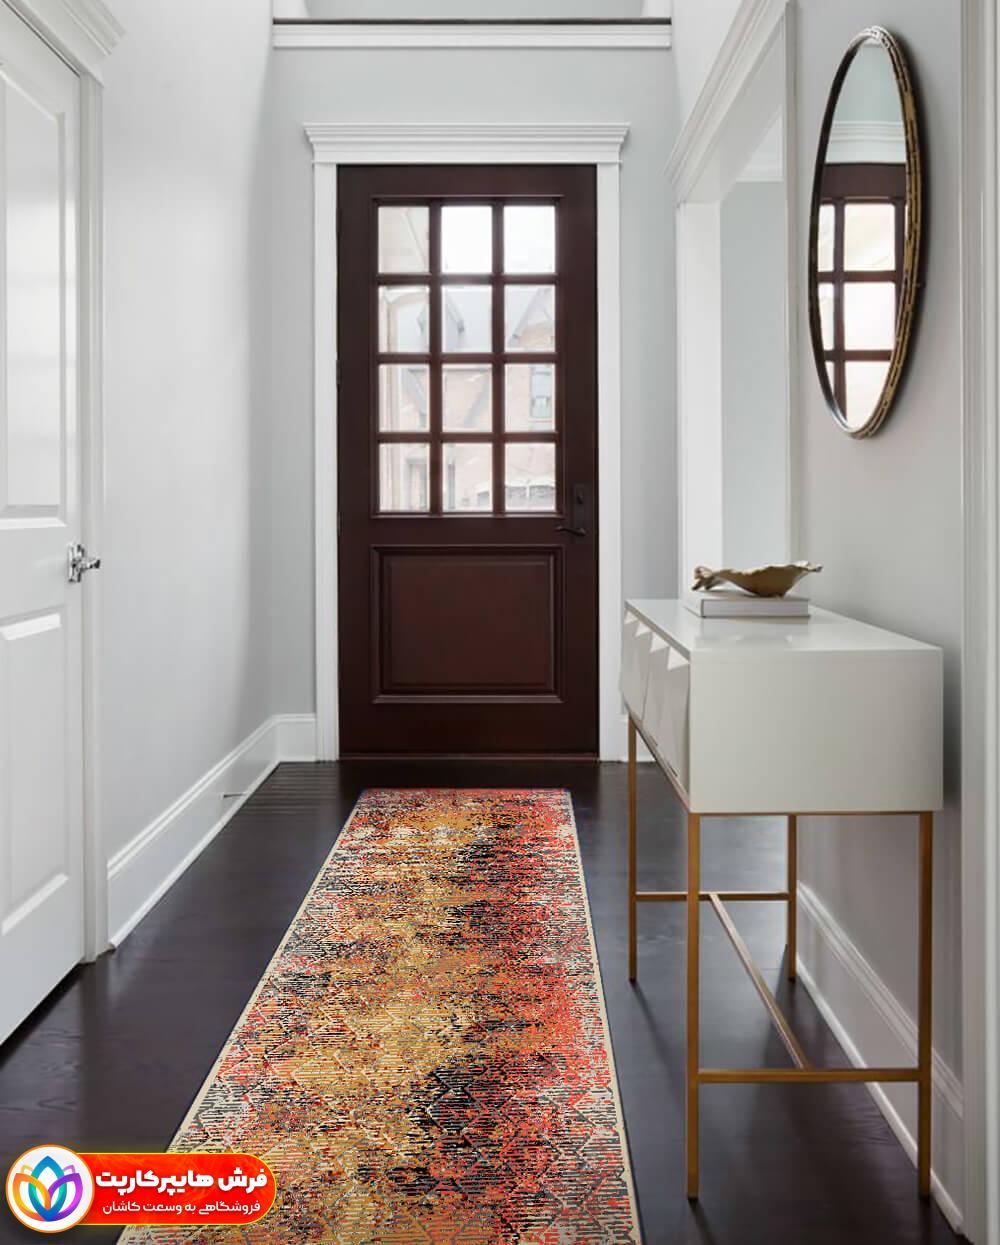 فرش مناسب برای راهرو چه ویژگی هایی دارد؟ + انواع فرش های مناسب راهرو ،5 طرح معروف فرش فانتزی 11